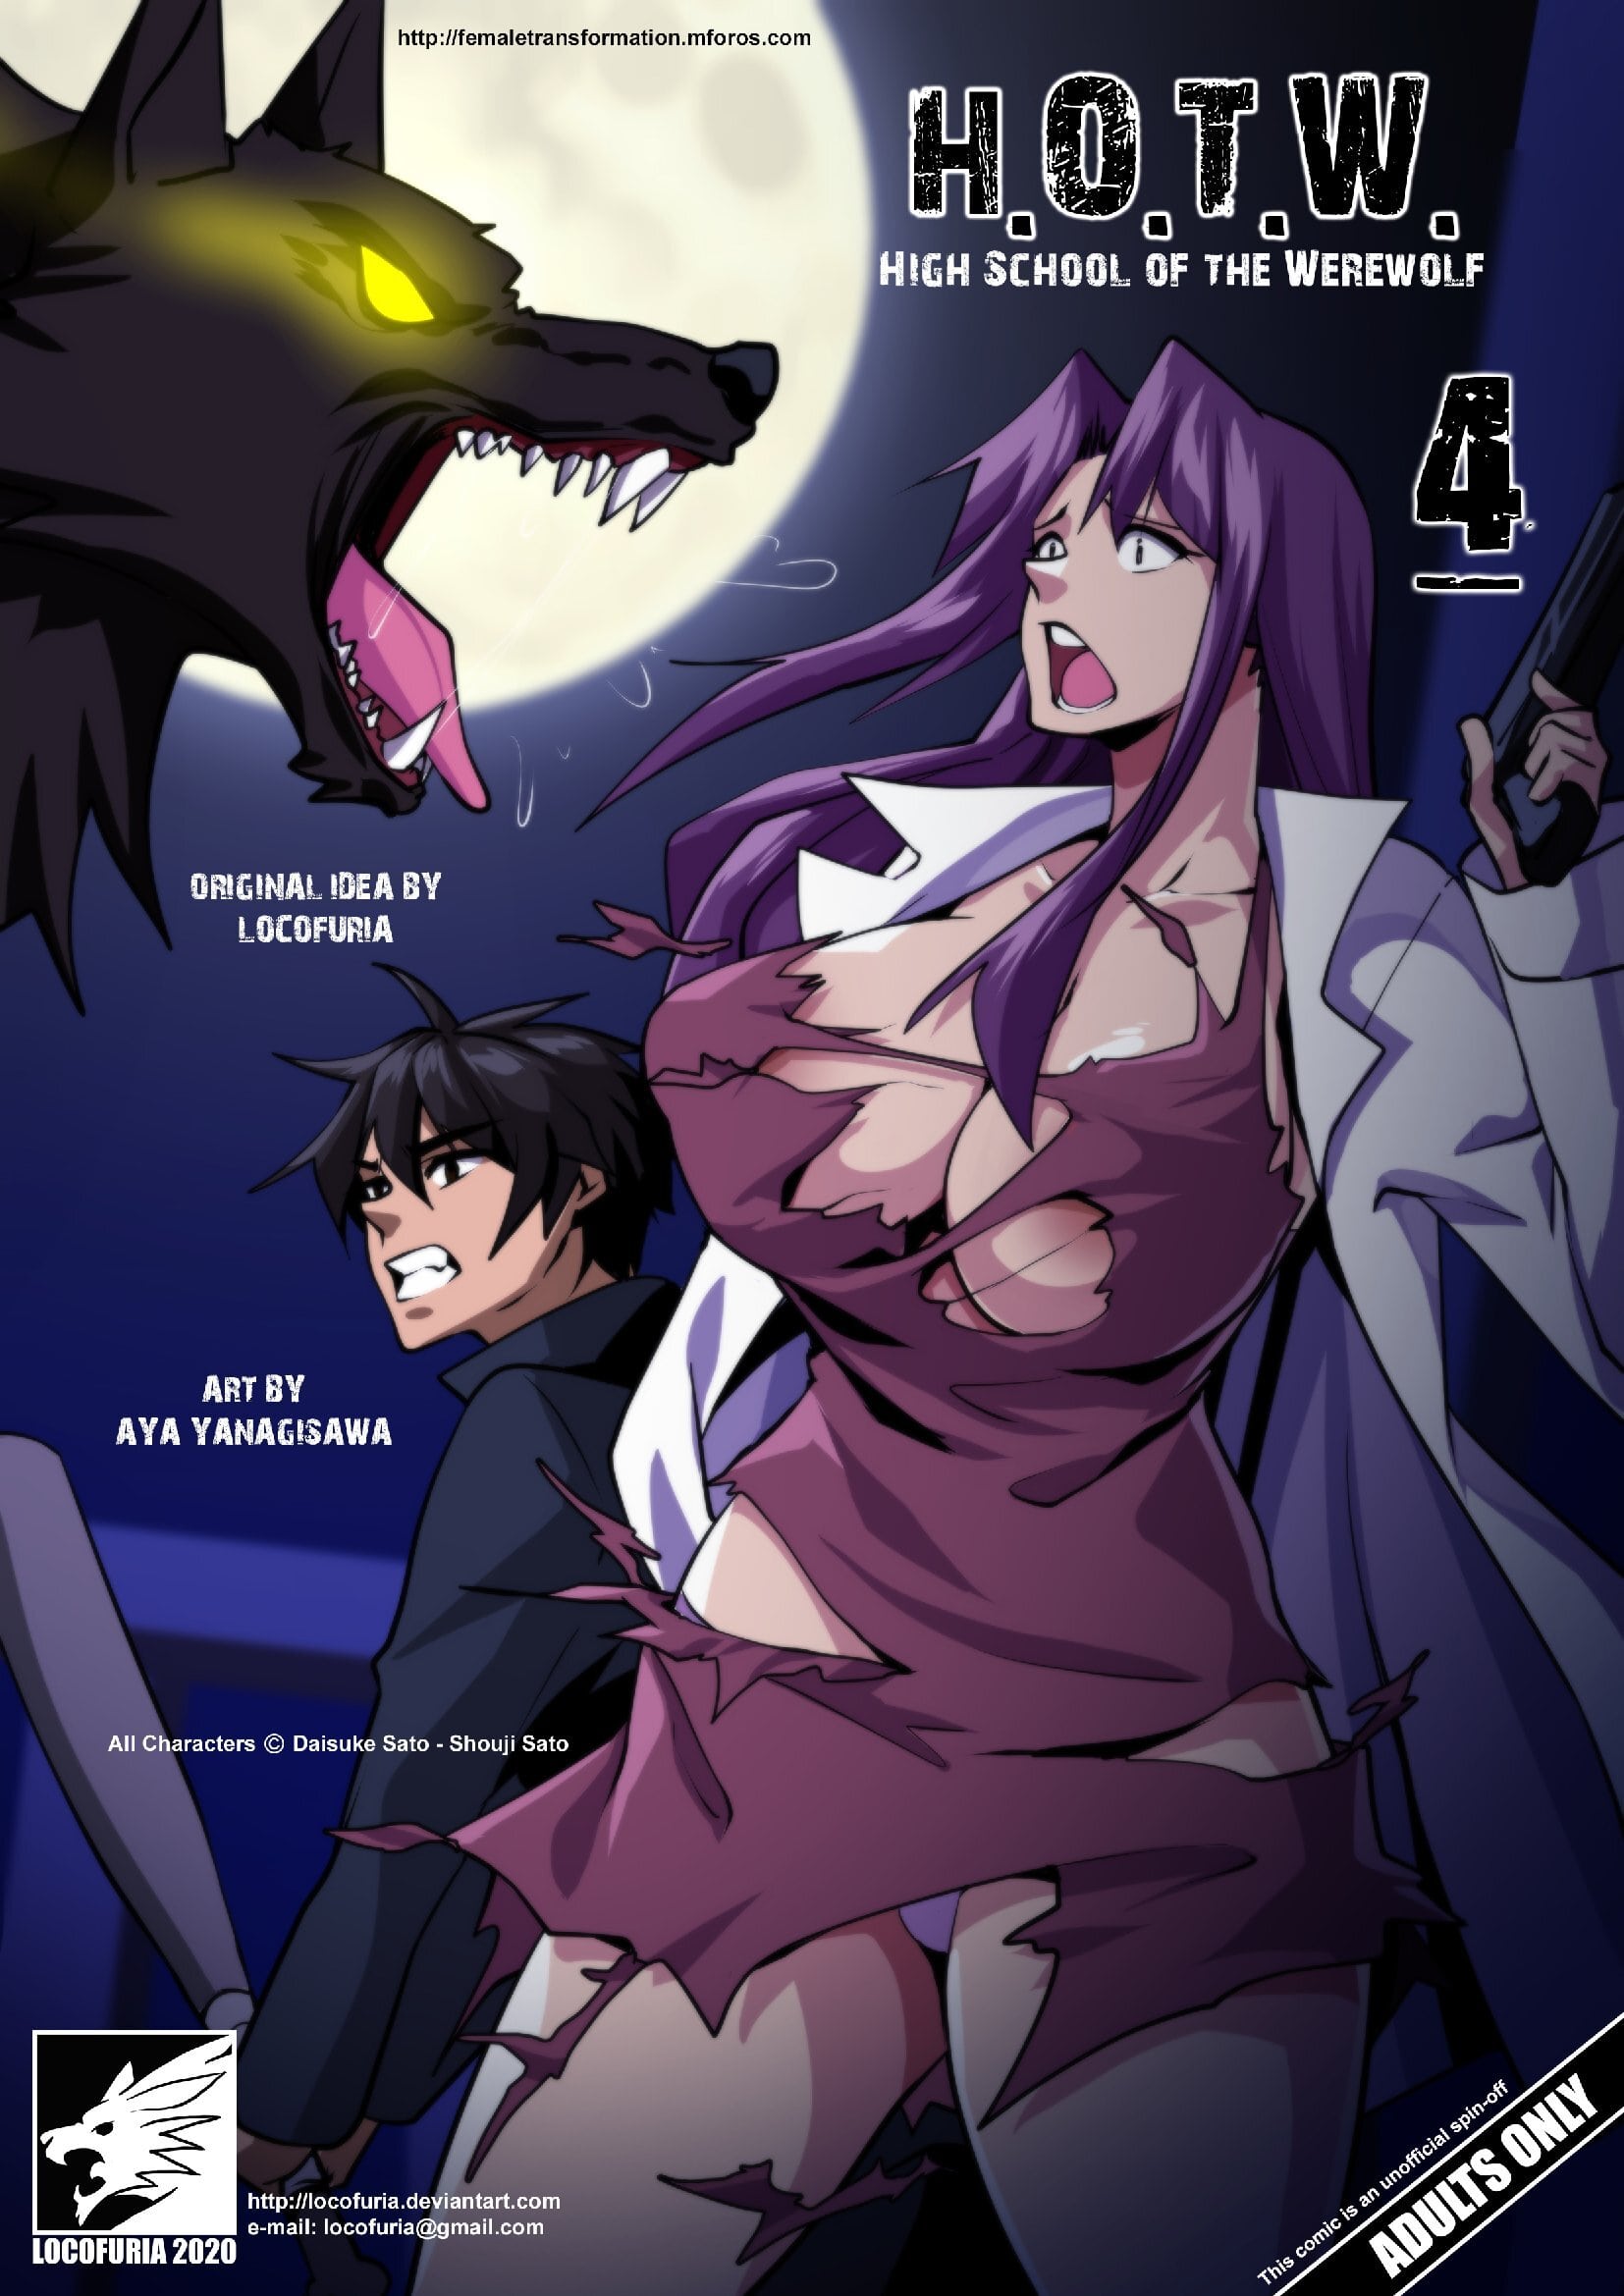 Werewolf anime porn